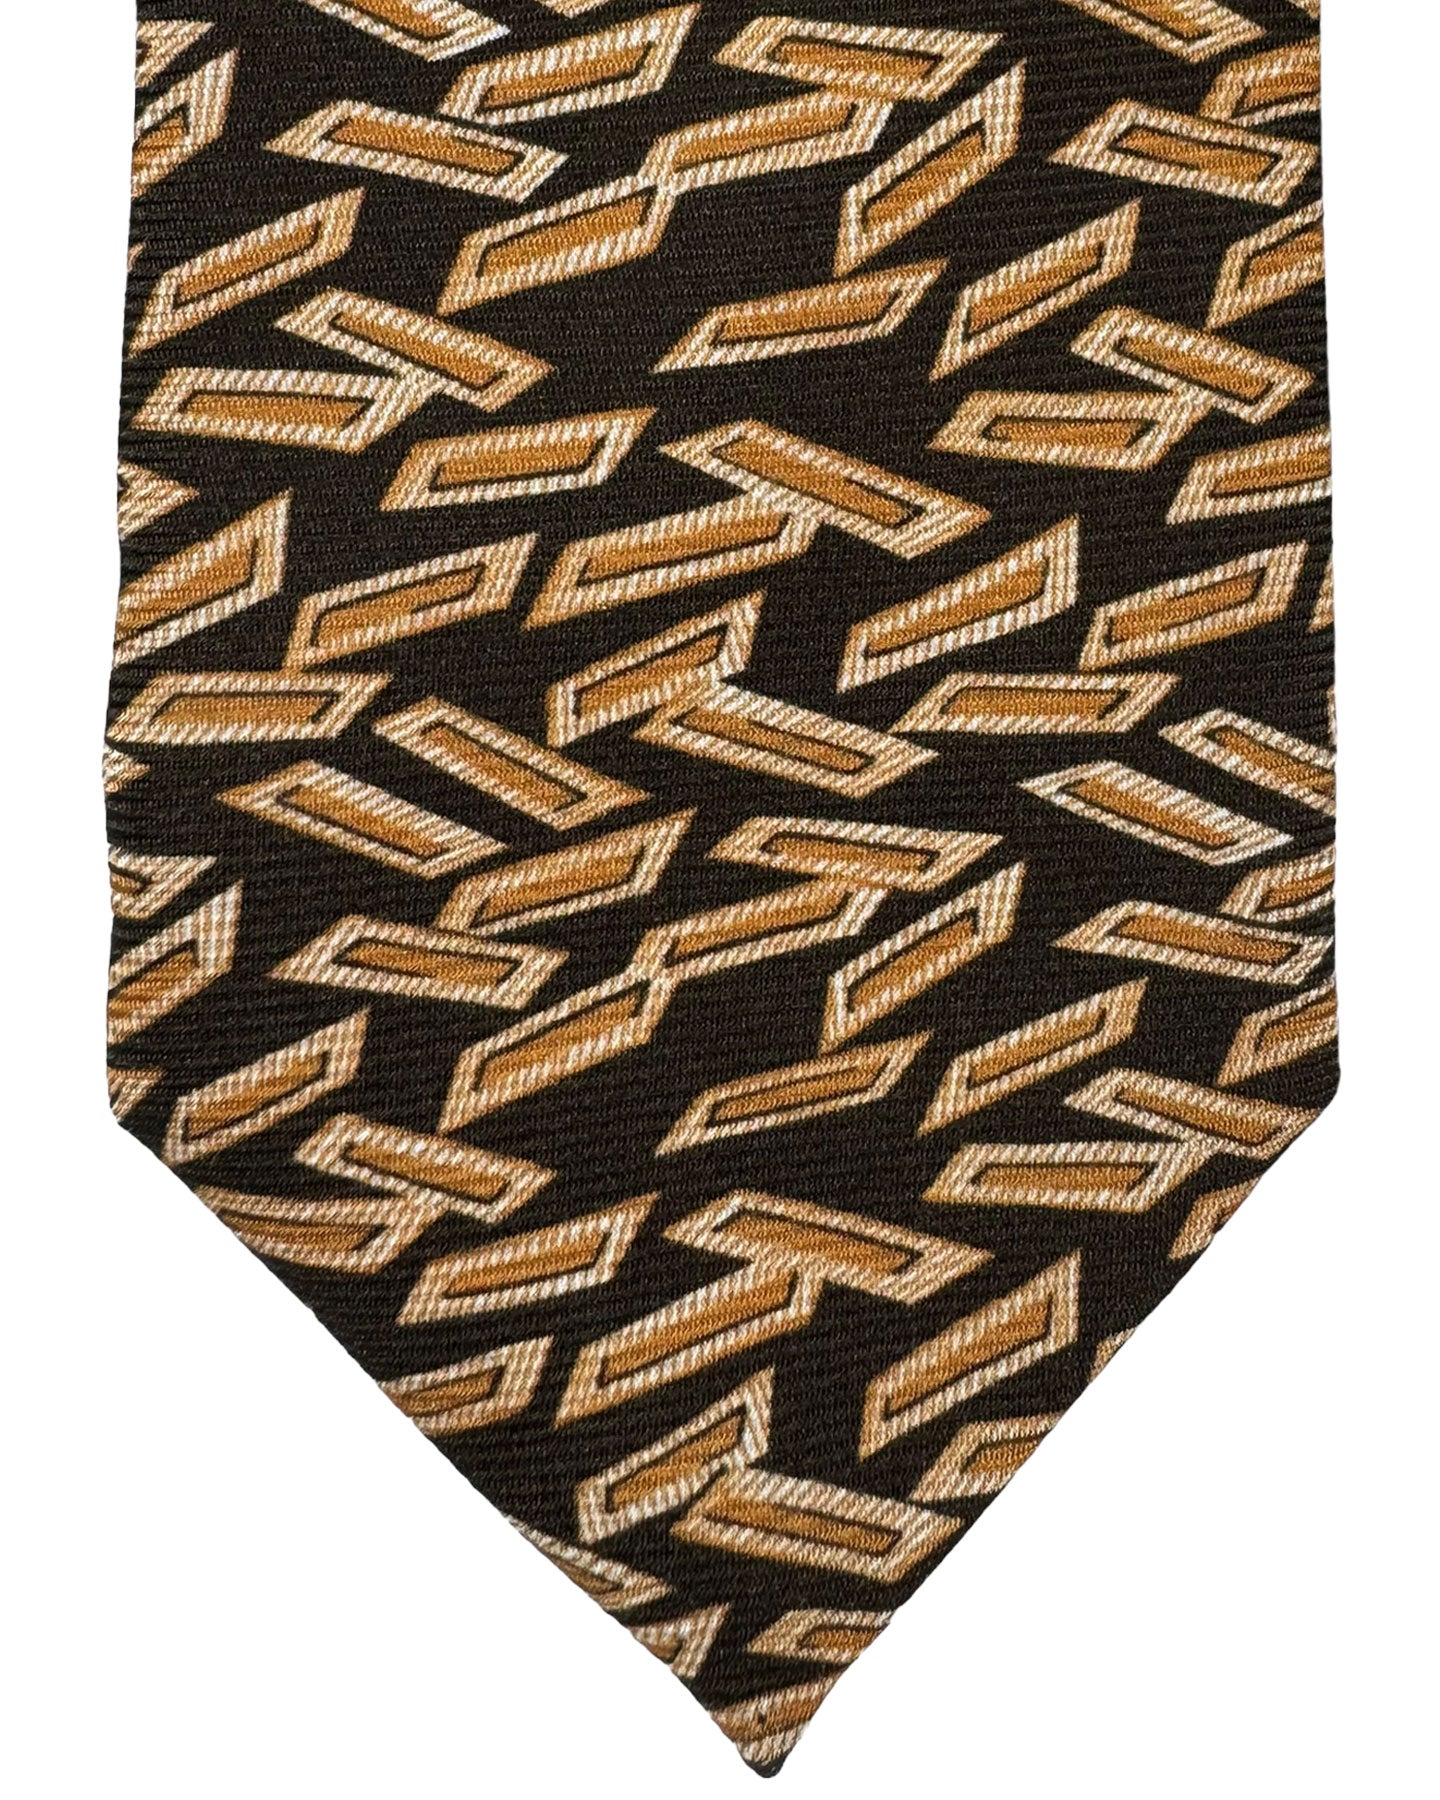 Kiton Silk Tie Brown Geometric Design - Sevenfold Necktie